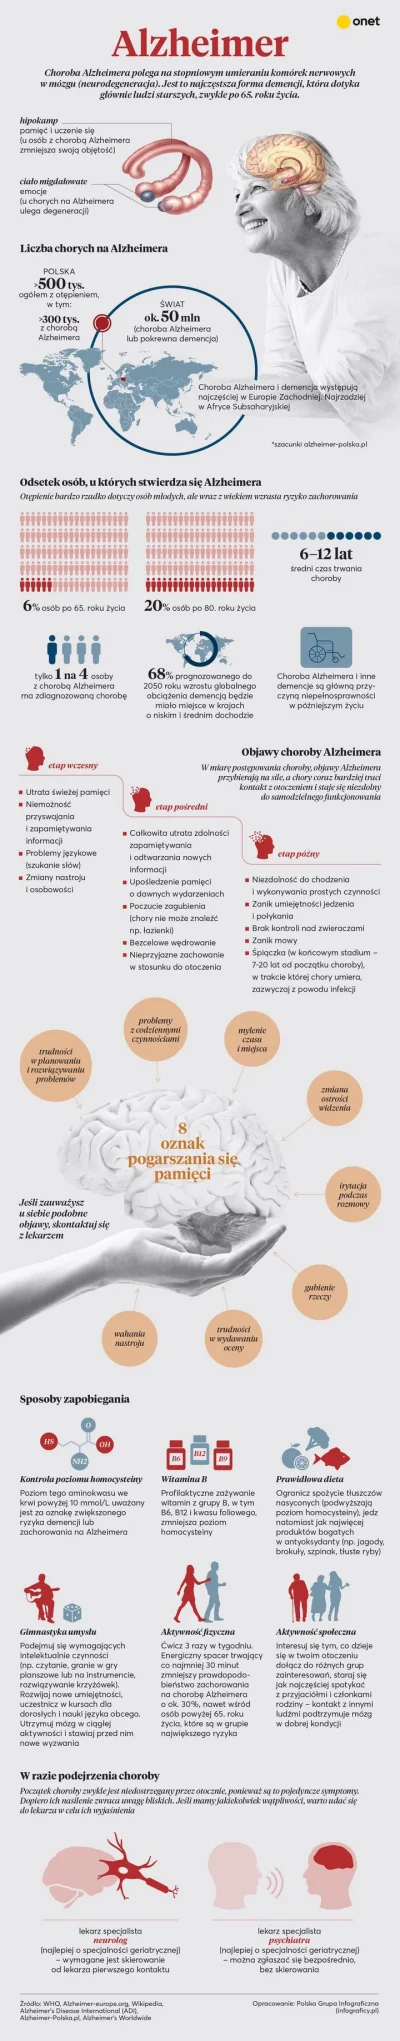 MalyBiolog - Infografika Onet.pl na temat choroby Alzheimera